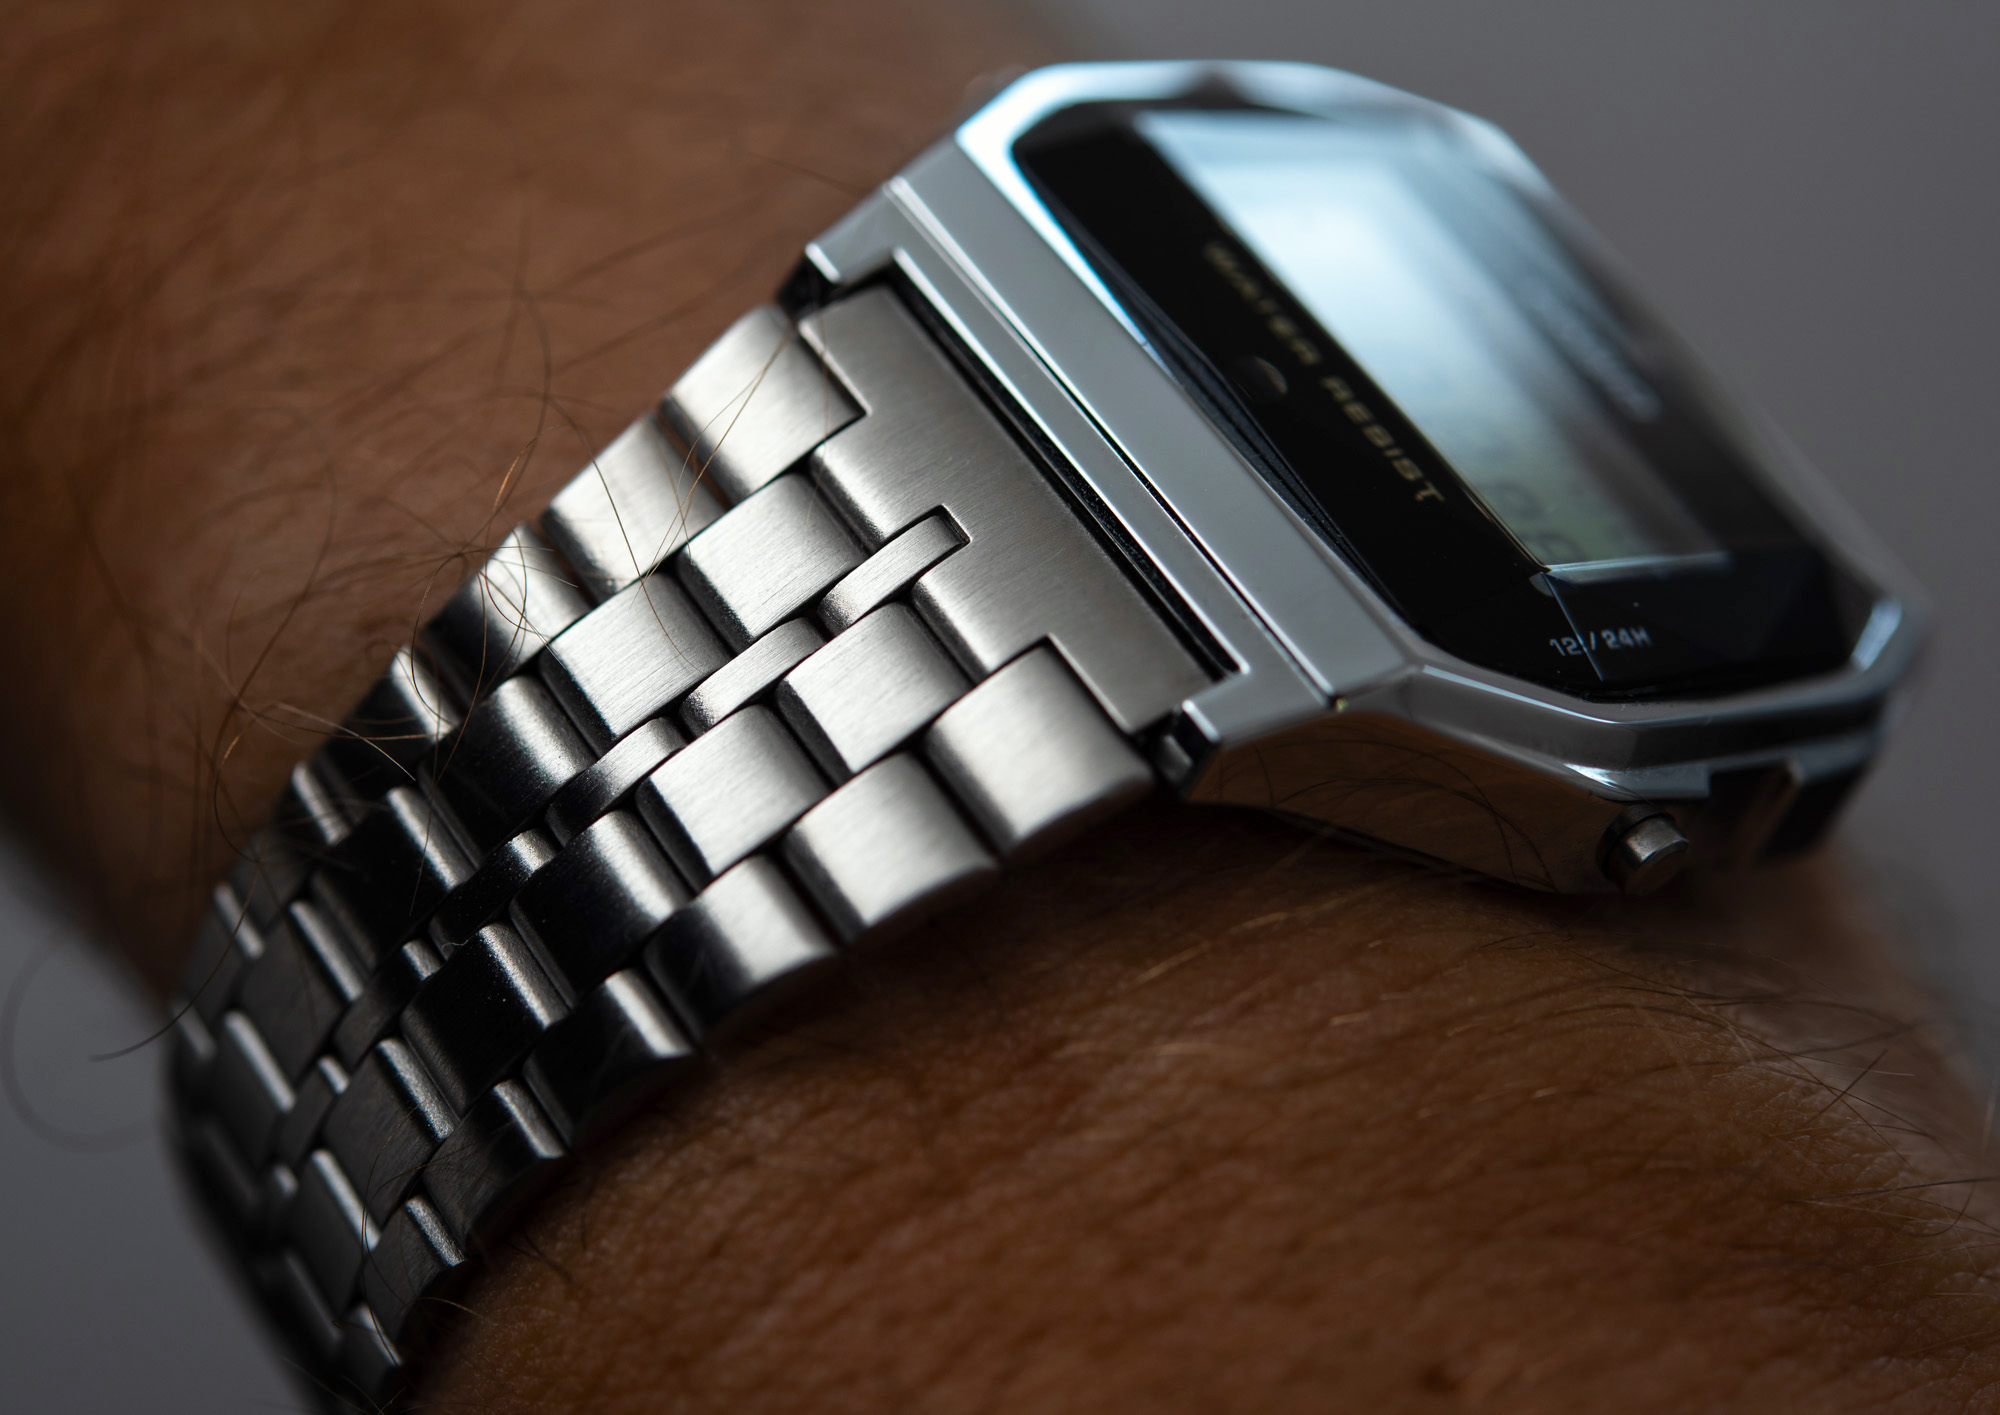 卡西欧A159WAD-1D方形LED复刻手表